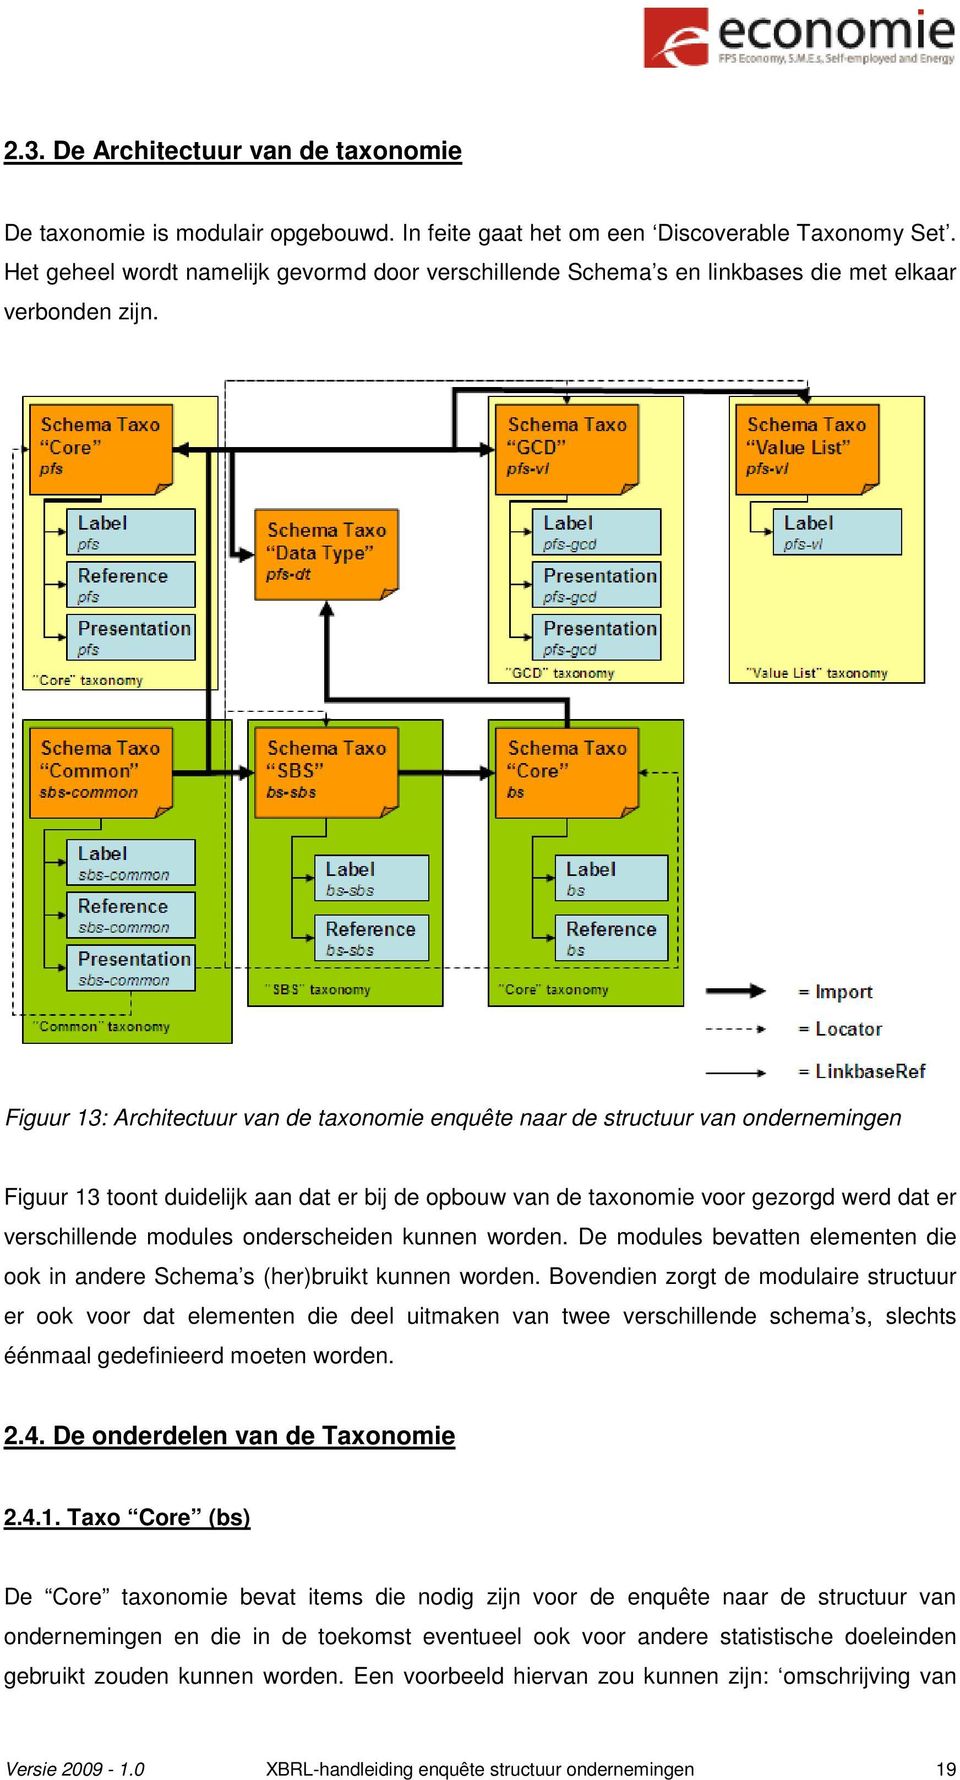 Figuur 13: Architectuur van de taxonomie enquête naar de structuur van ondernemingen Figuur 13 toont duidelijk aan dat er bij de opbouw van de taxonomie voor gezorgd werd dat er verschillende modules